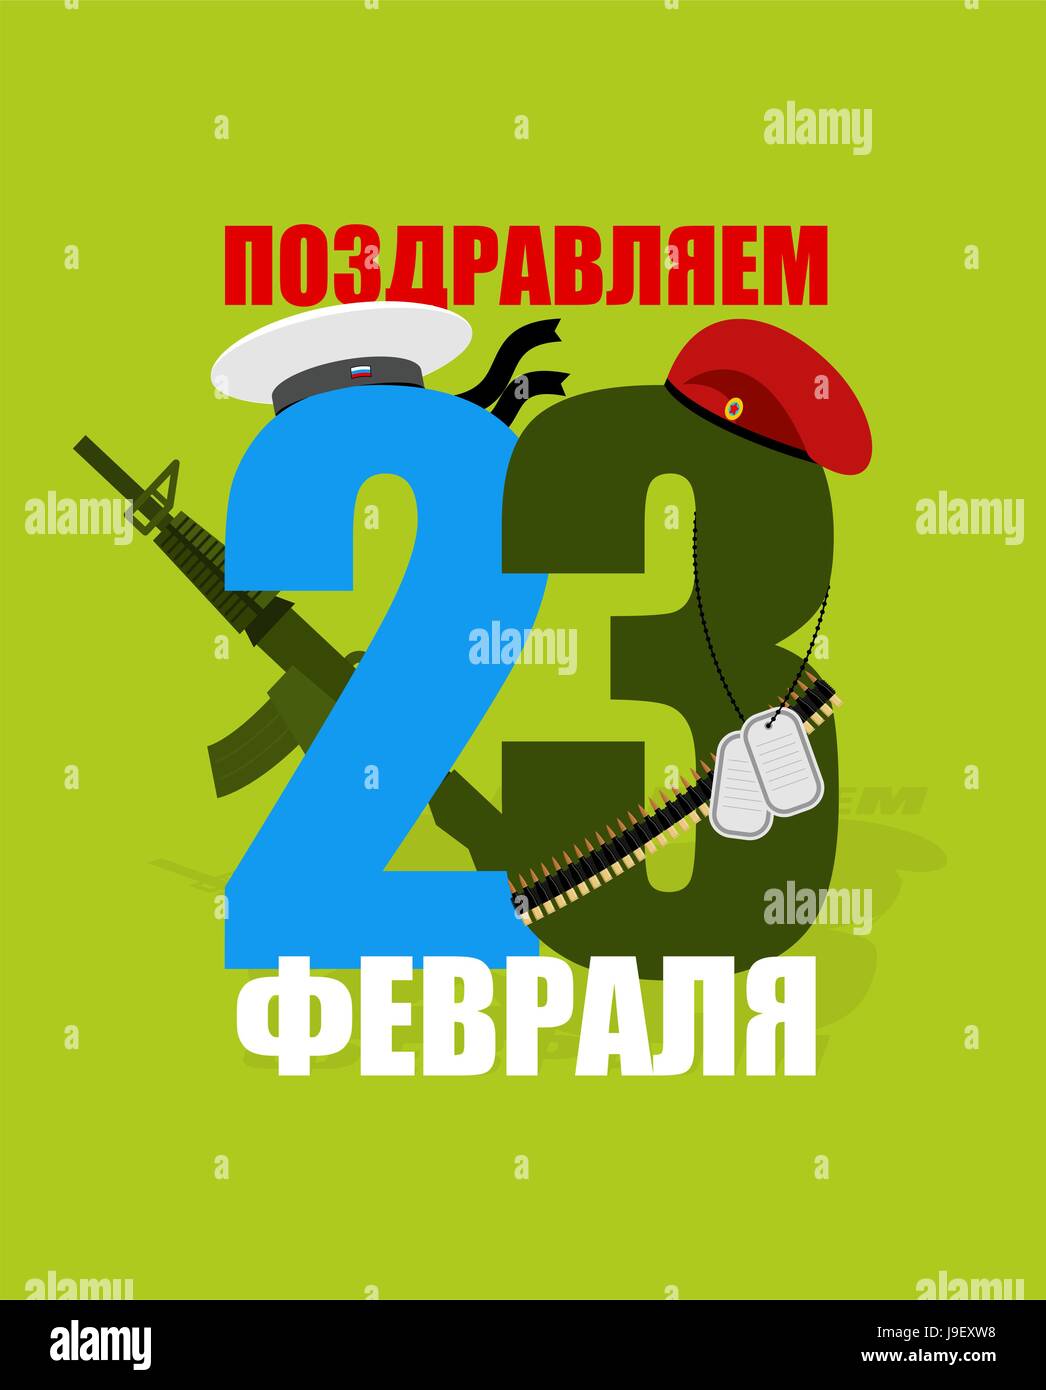 Logo für 23 Februar. Kastanienbraunes Barett, rote Mütze und Matrose Mütze  mit Bändern. Pistole und Patronengürtel. Urlaub in Russland für Militär.  Patriotische Veranstaltung. Da Stock-Vektorgrafik - Alamy